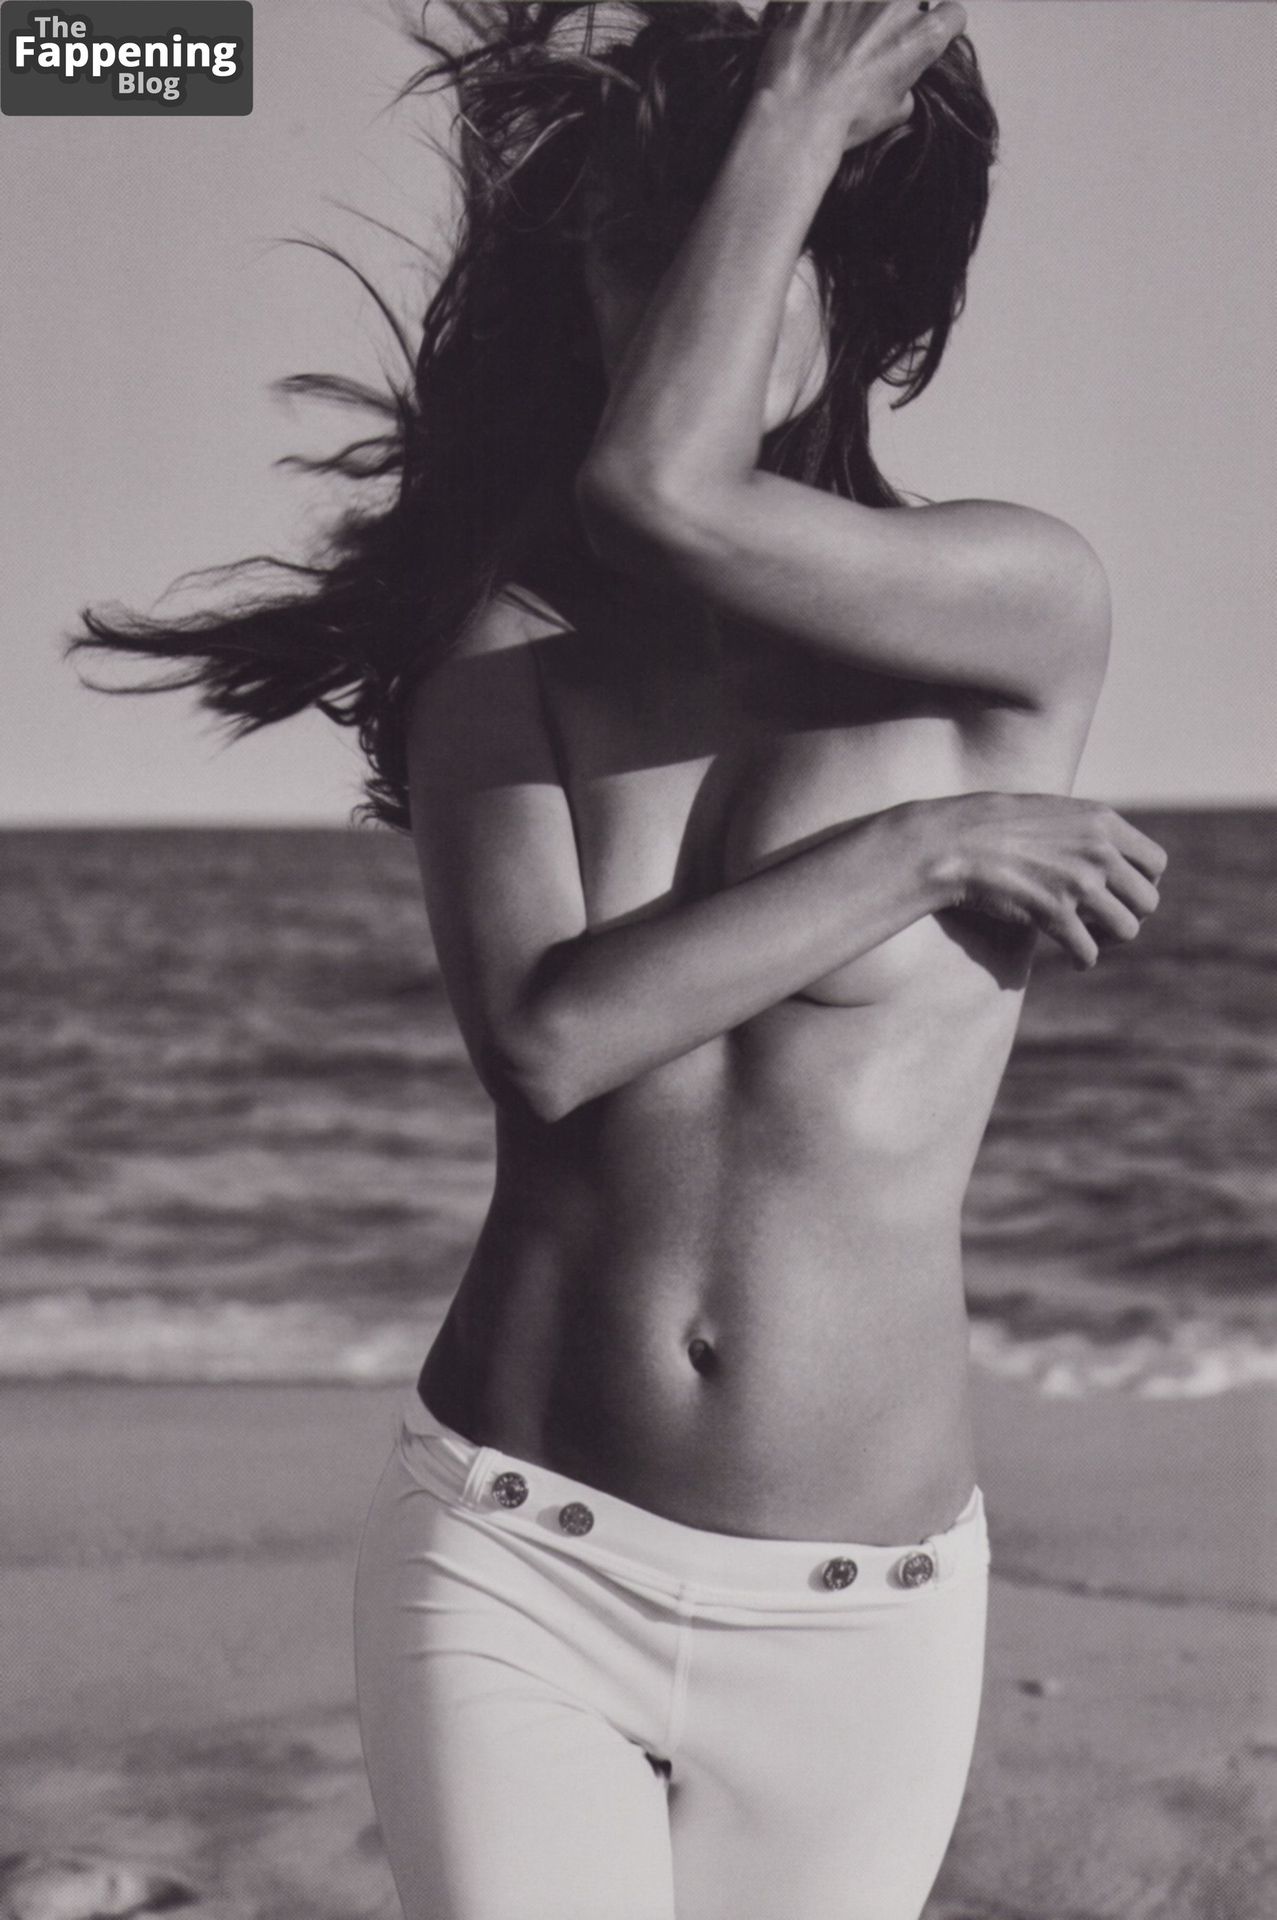 Alessandra Ambrosio nude photos from the paparazzi